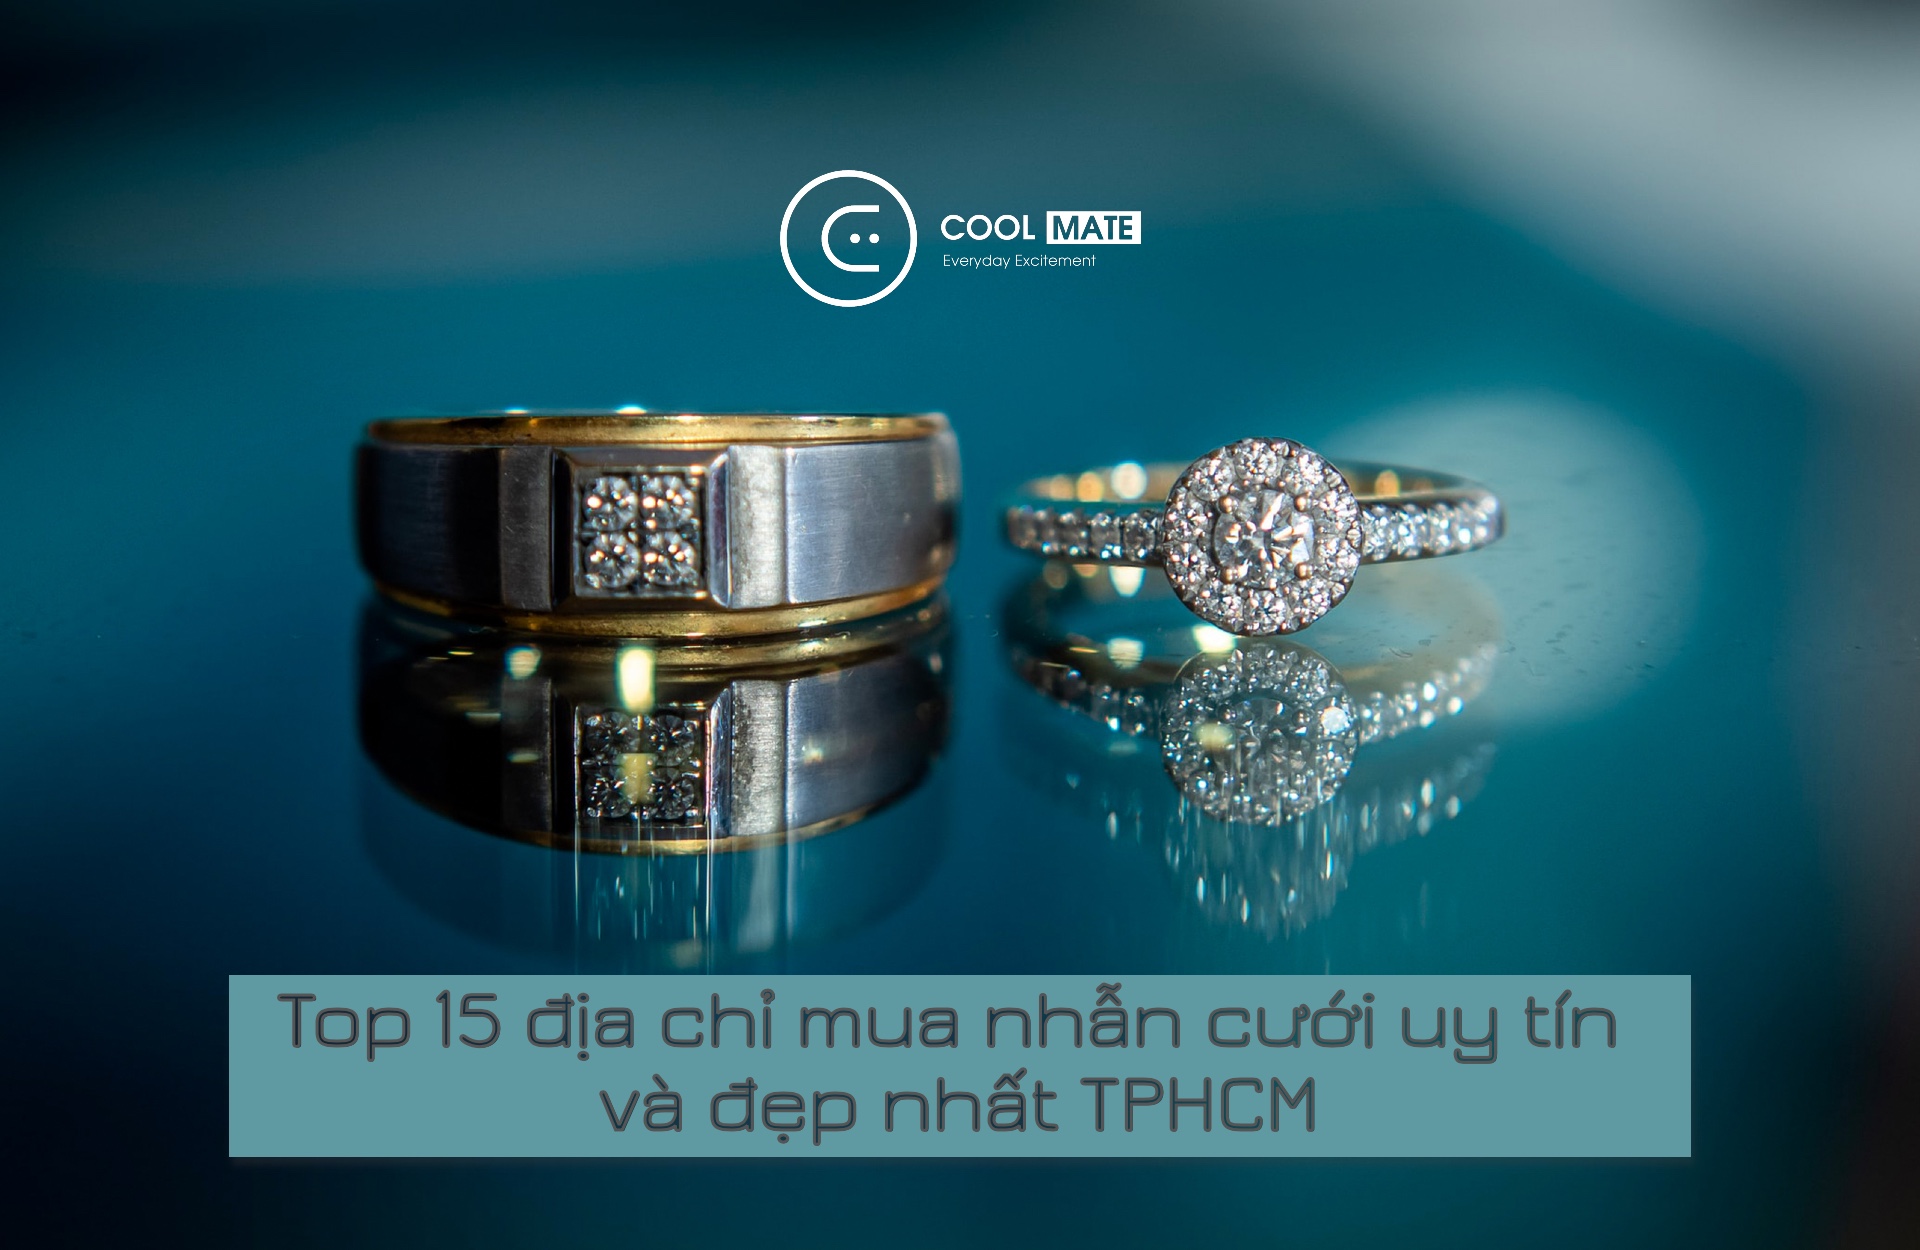 Top 15 địa điểm mua nhẫn cưới, nhẫn đính hôn ở TPHCM uy tín và chất lượng